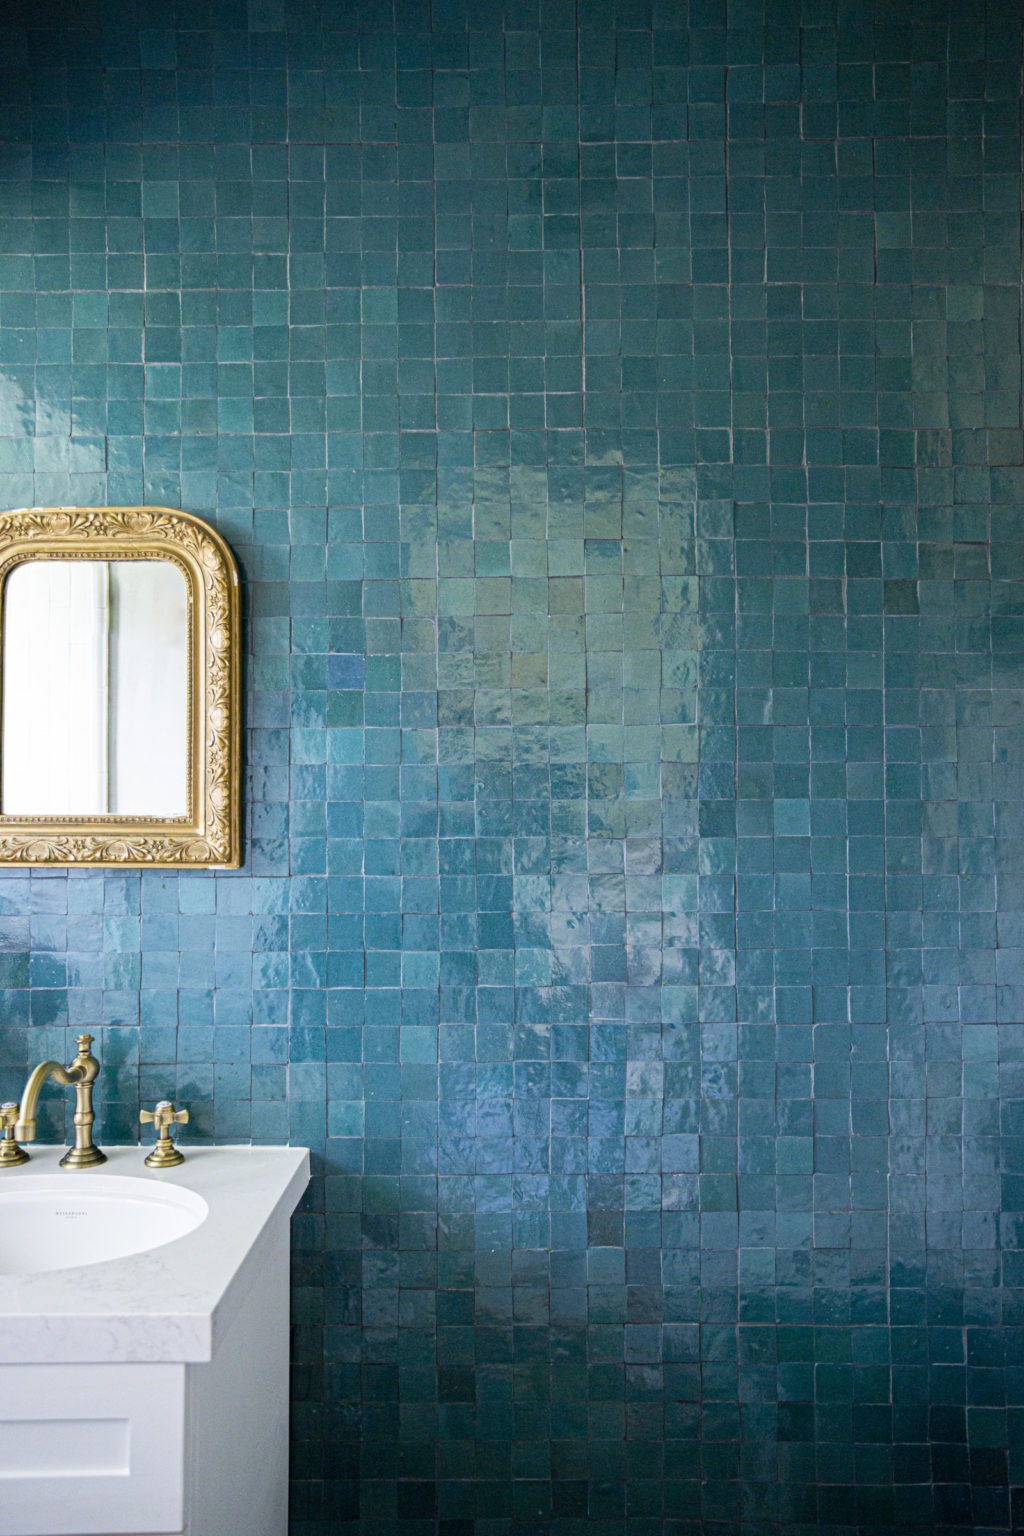 bathroom backsplash with clé tile zellige glazed terracotta fired opal 2x2 square tiles on the backsplash